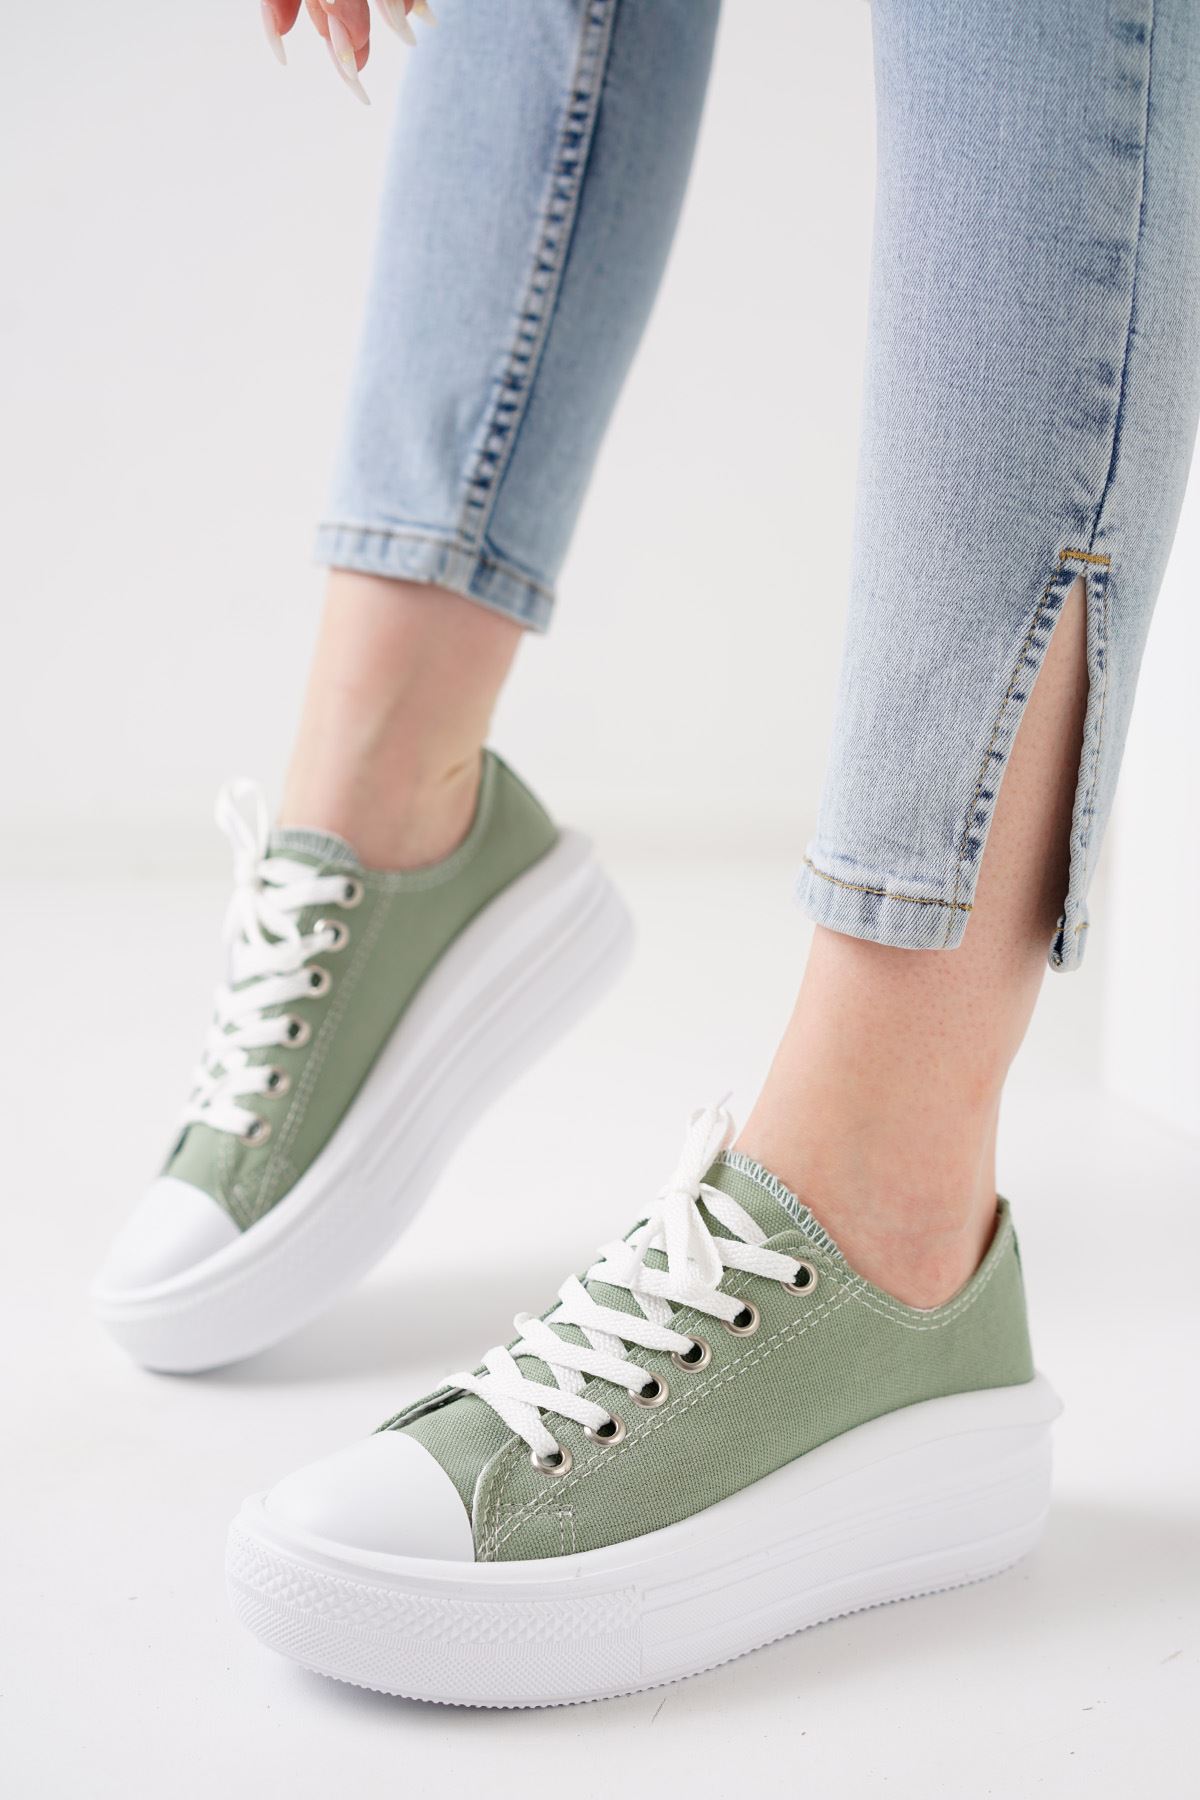 Pandone Mint Yeşil Keten Kadın Spor Ayakkabı